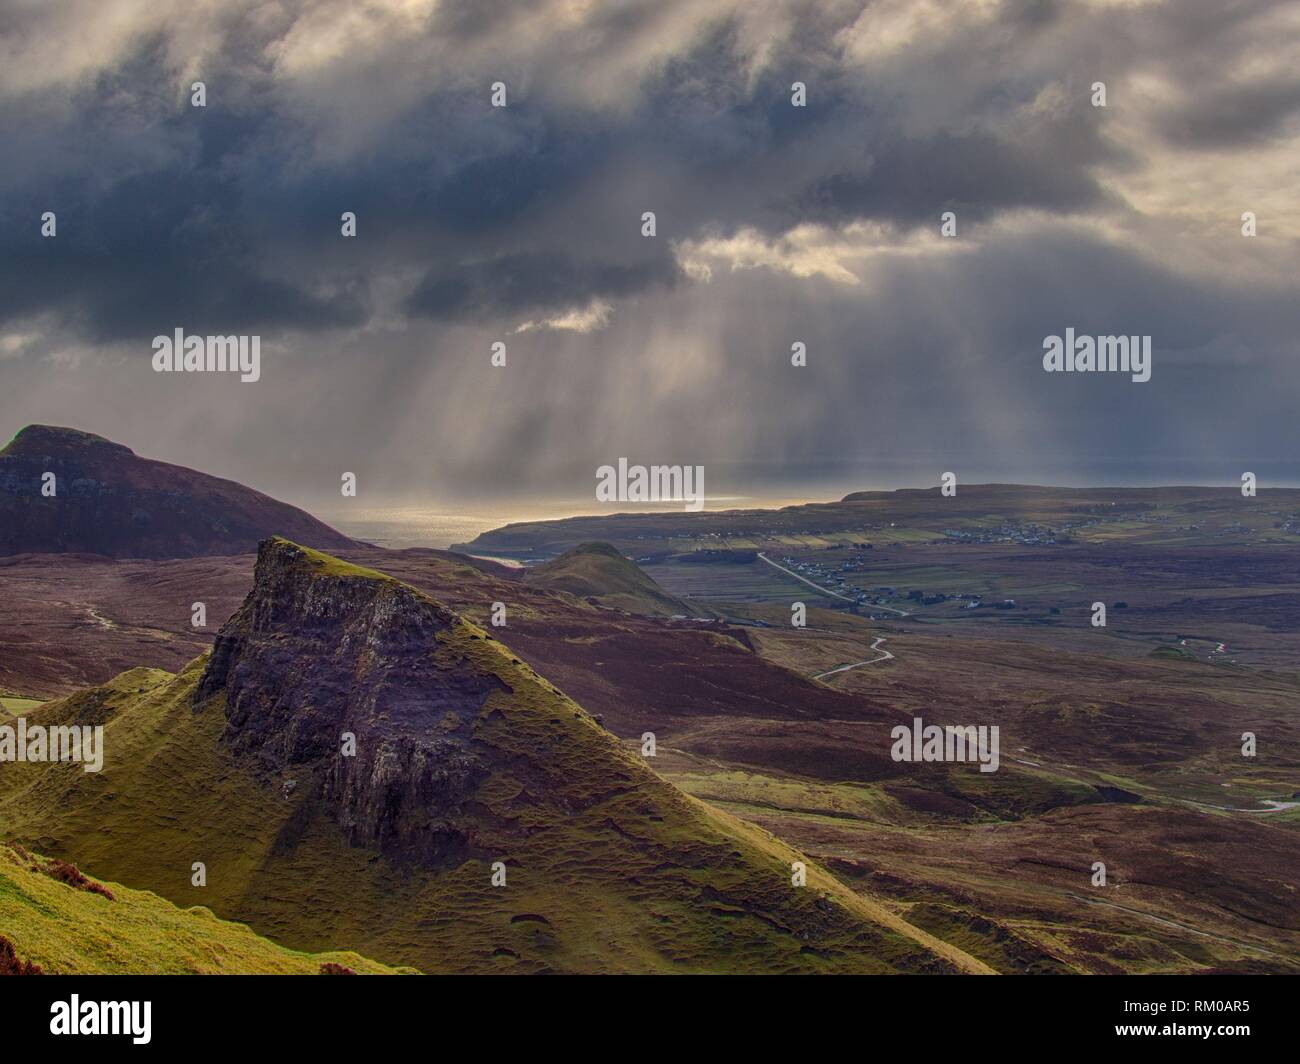 Scotland Isle of Skye Quiraing Vista. Stock Photo